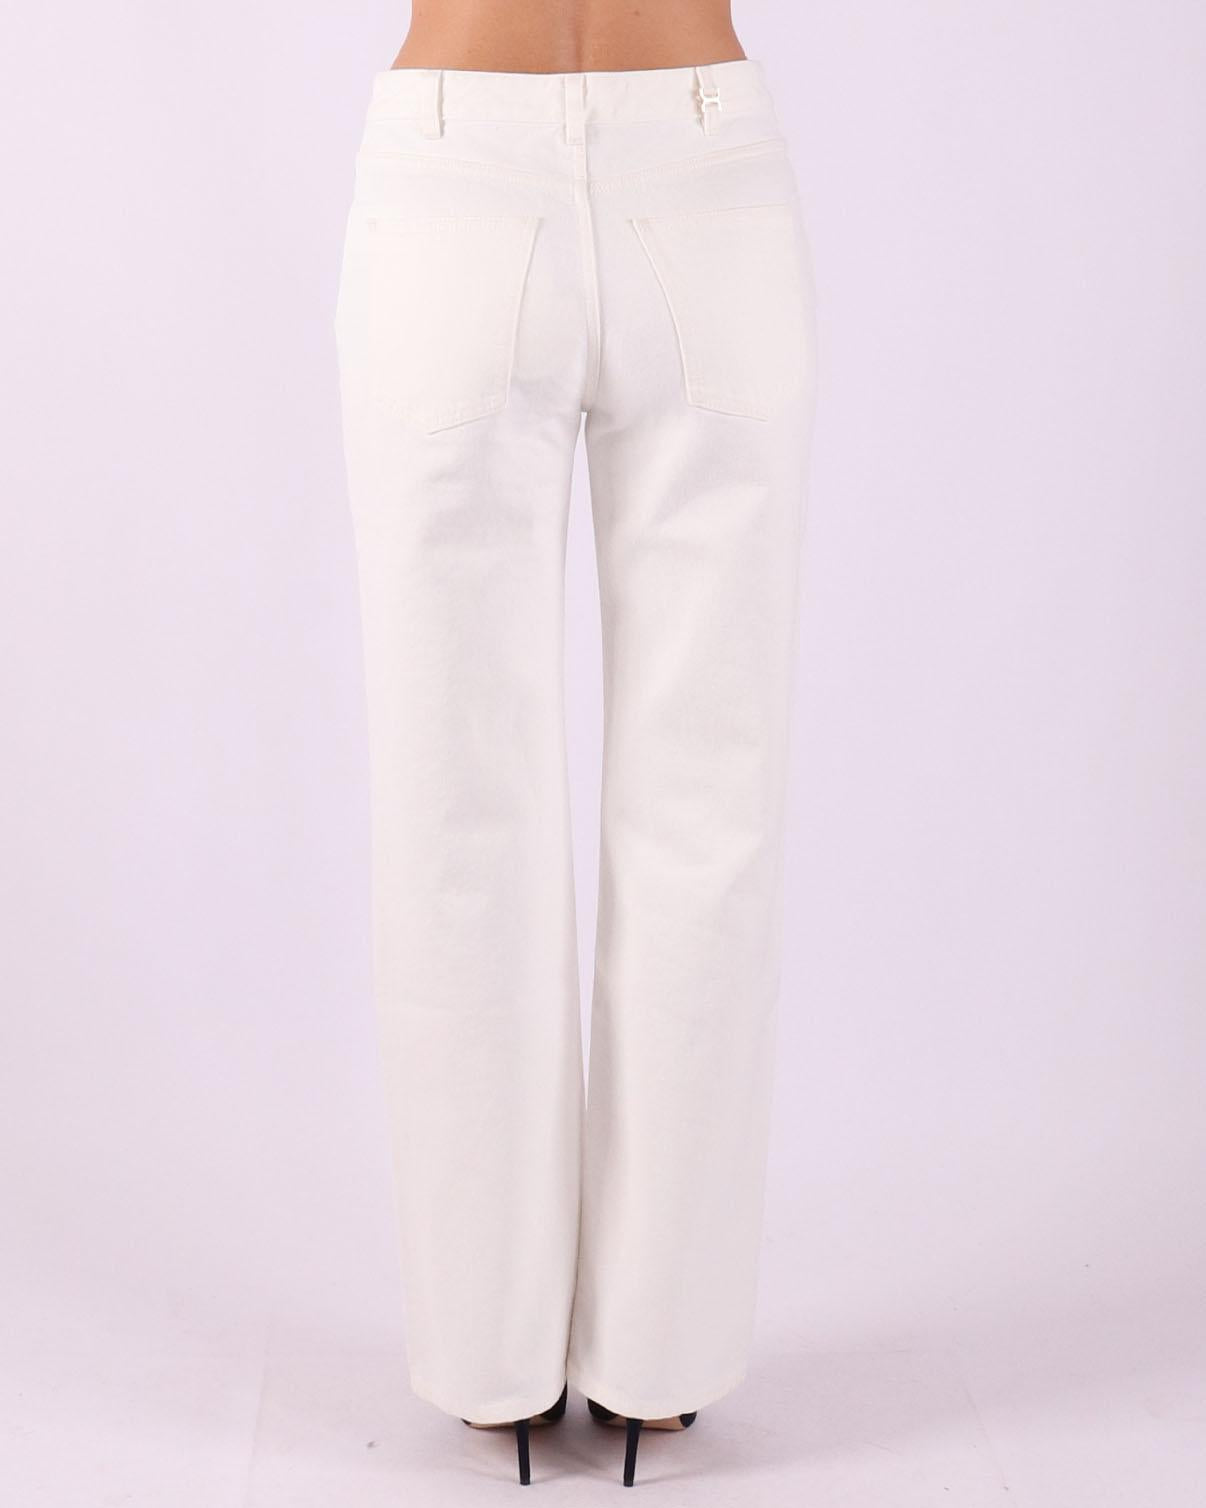 Chloe Pantalons voor dames in het wit